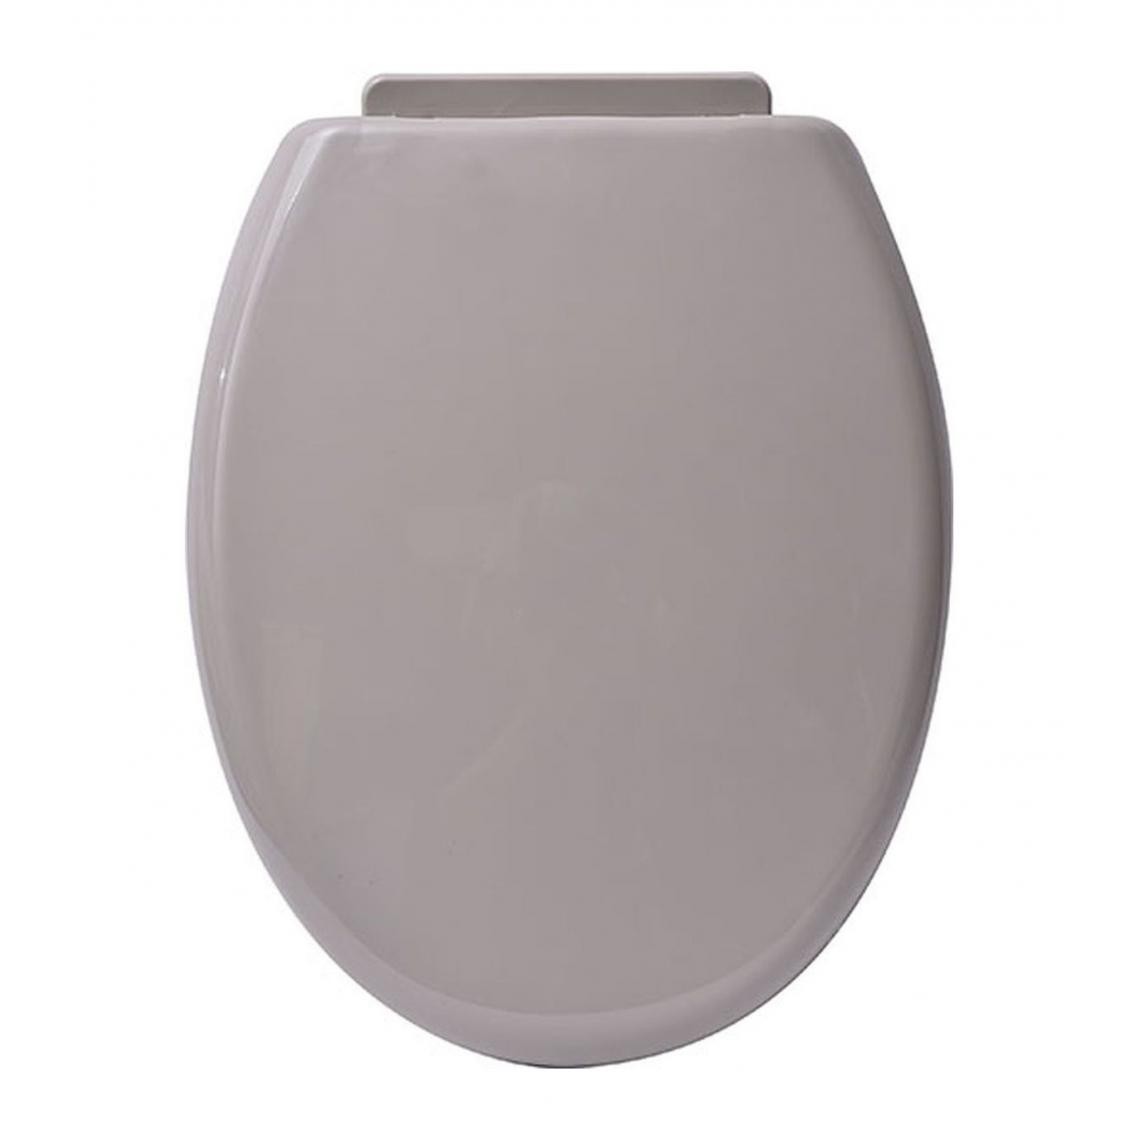 Tendance - TENDANCE - Abattant WC standard Taupe avec kit de fixation - Abattant WC